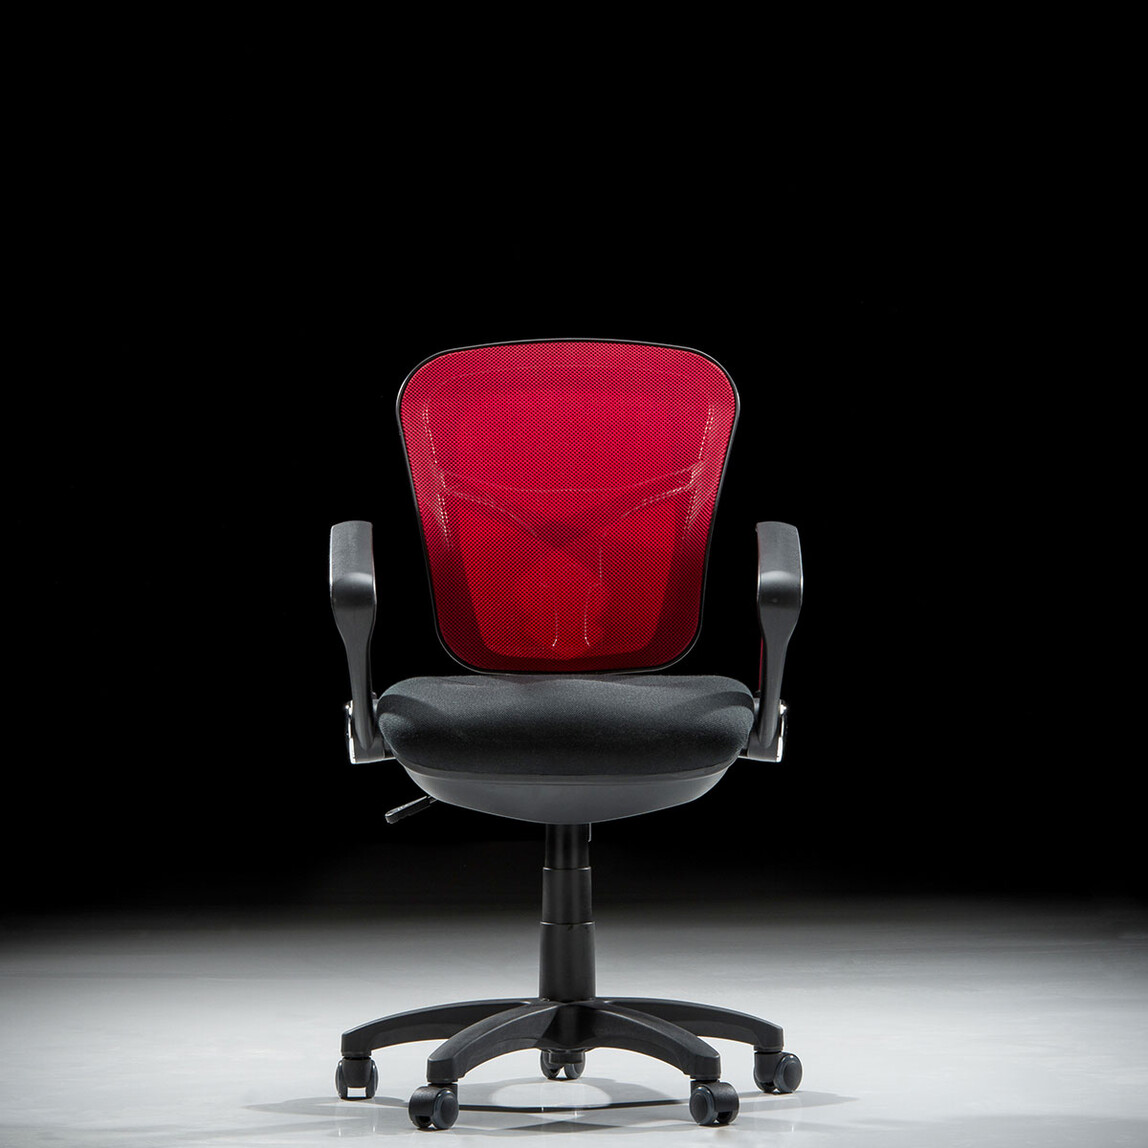    Adore Comfort Ultra Ofis Sandalyesi - Kırmızı 